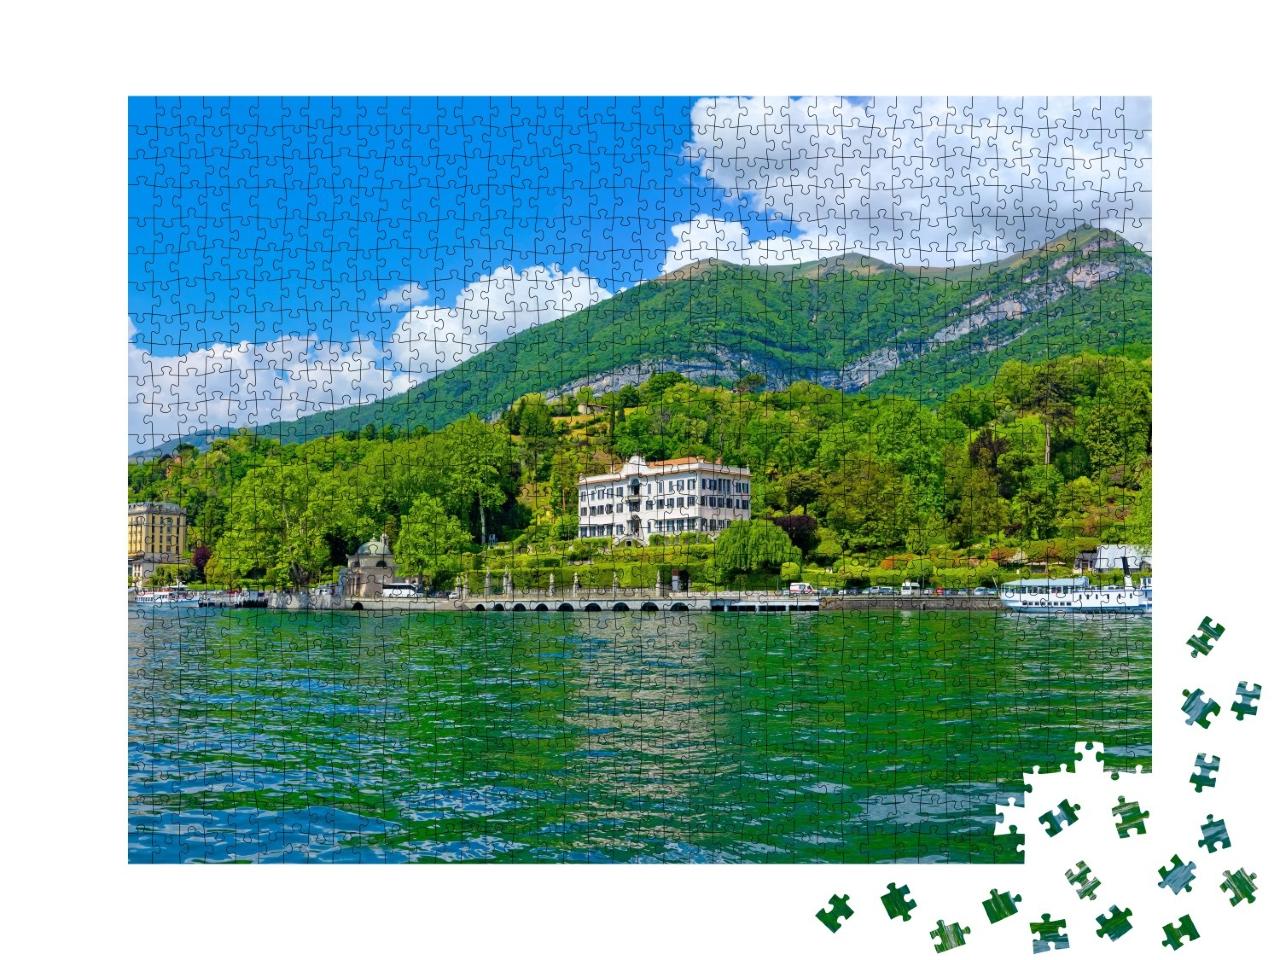 Puzzle de 1000 pièces « Panorama ensoleillé sur le lac de Côme avec bateau d'excursion »